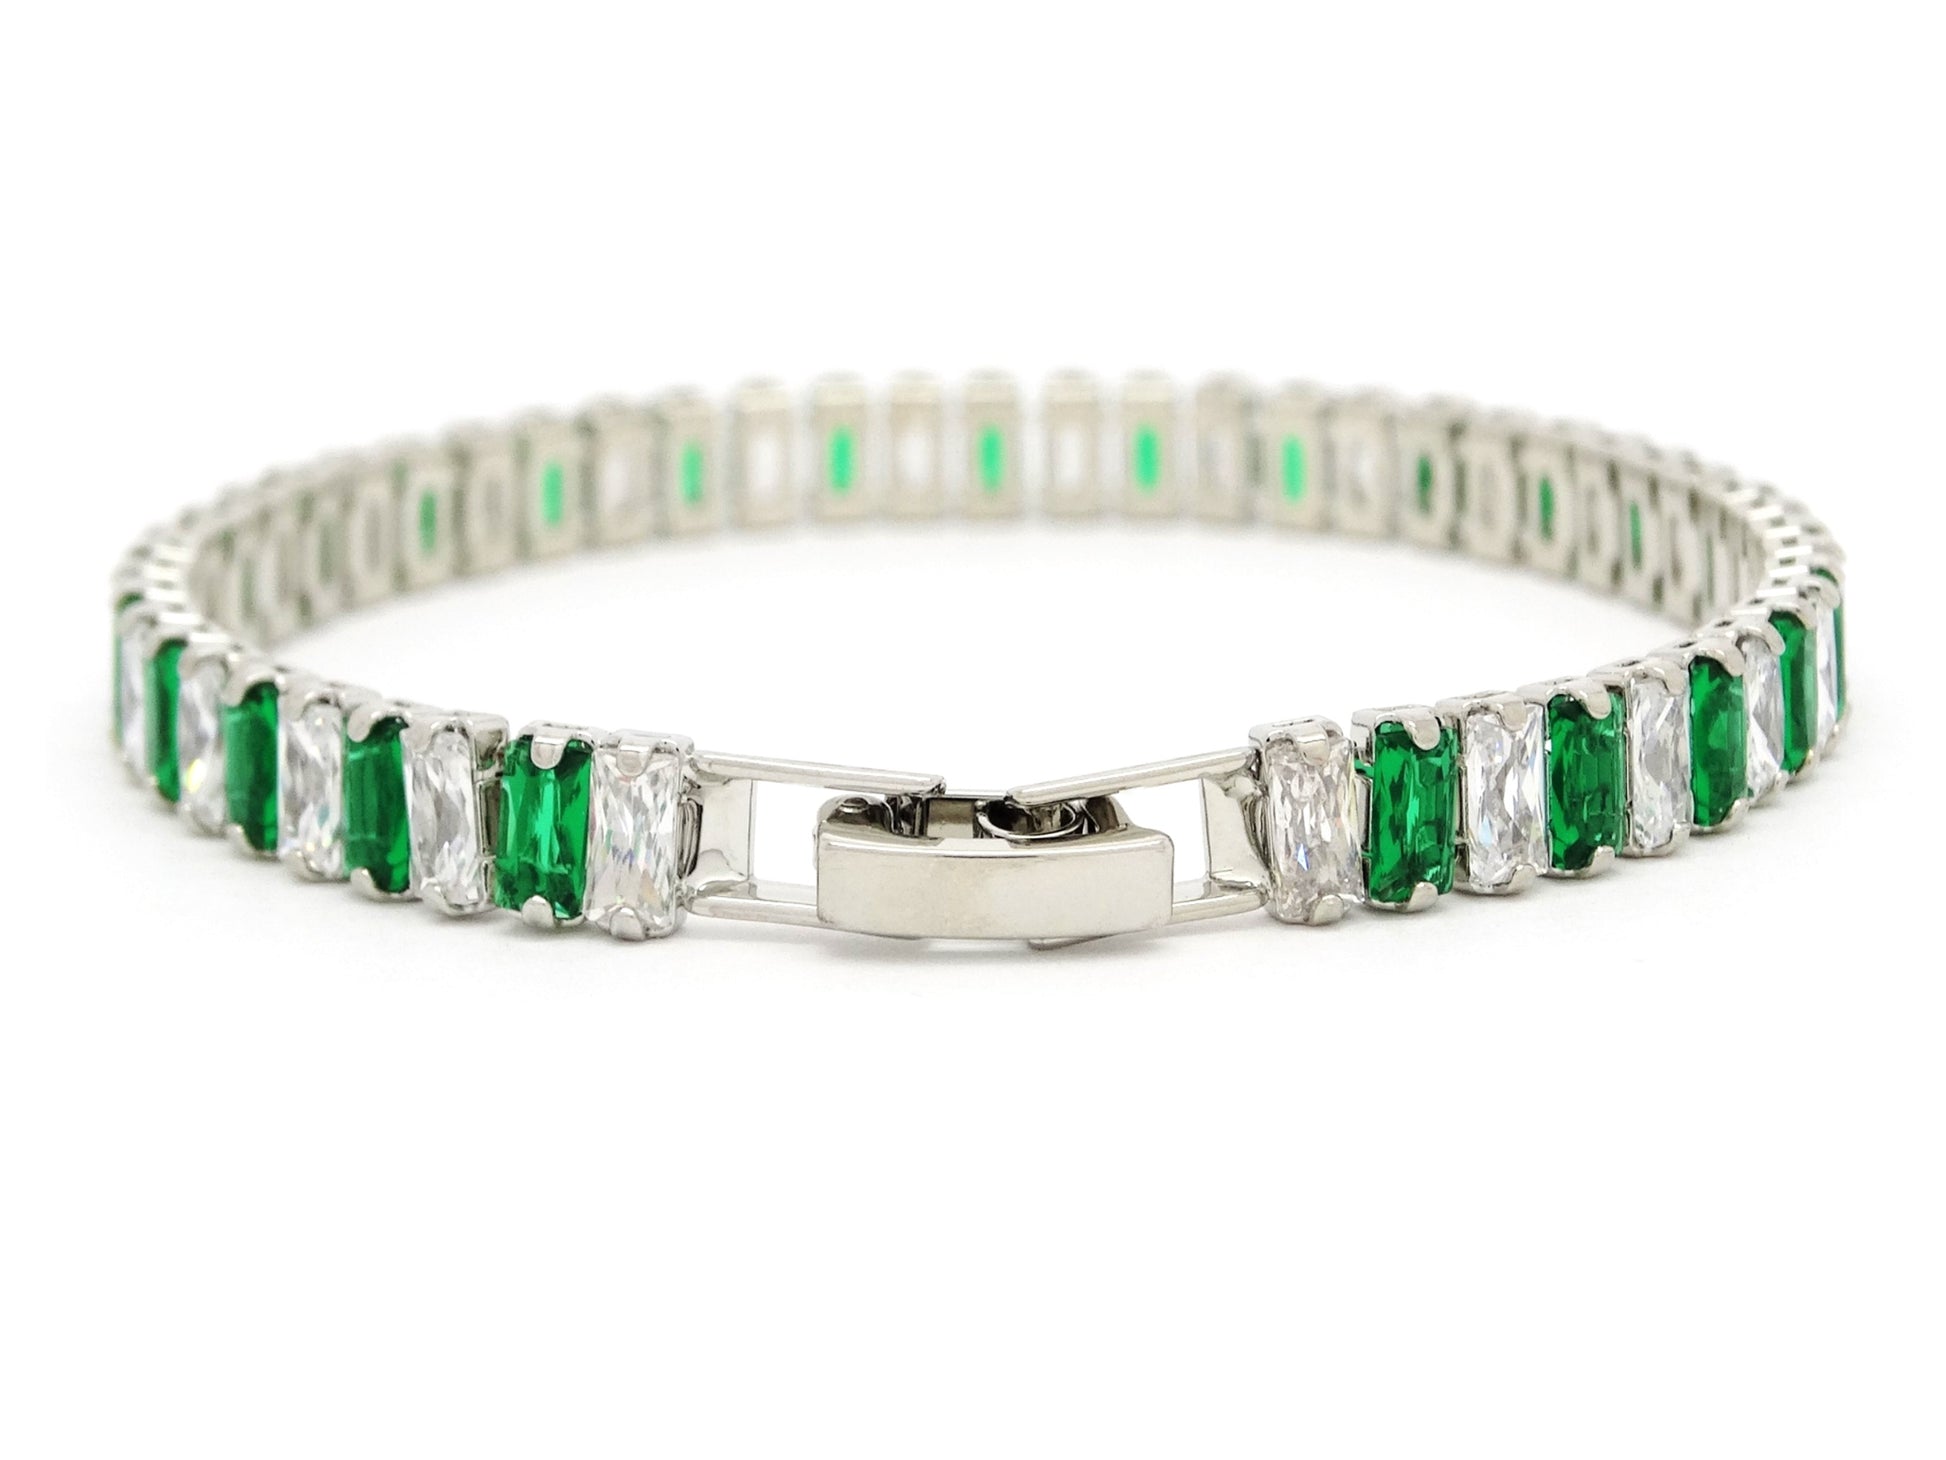 Green and white baguette tennis bracelet BACK